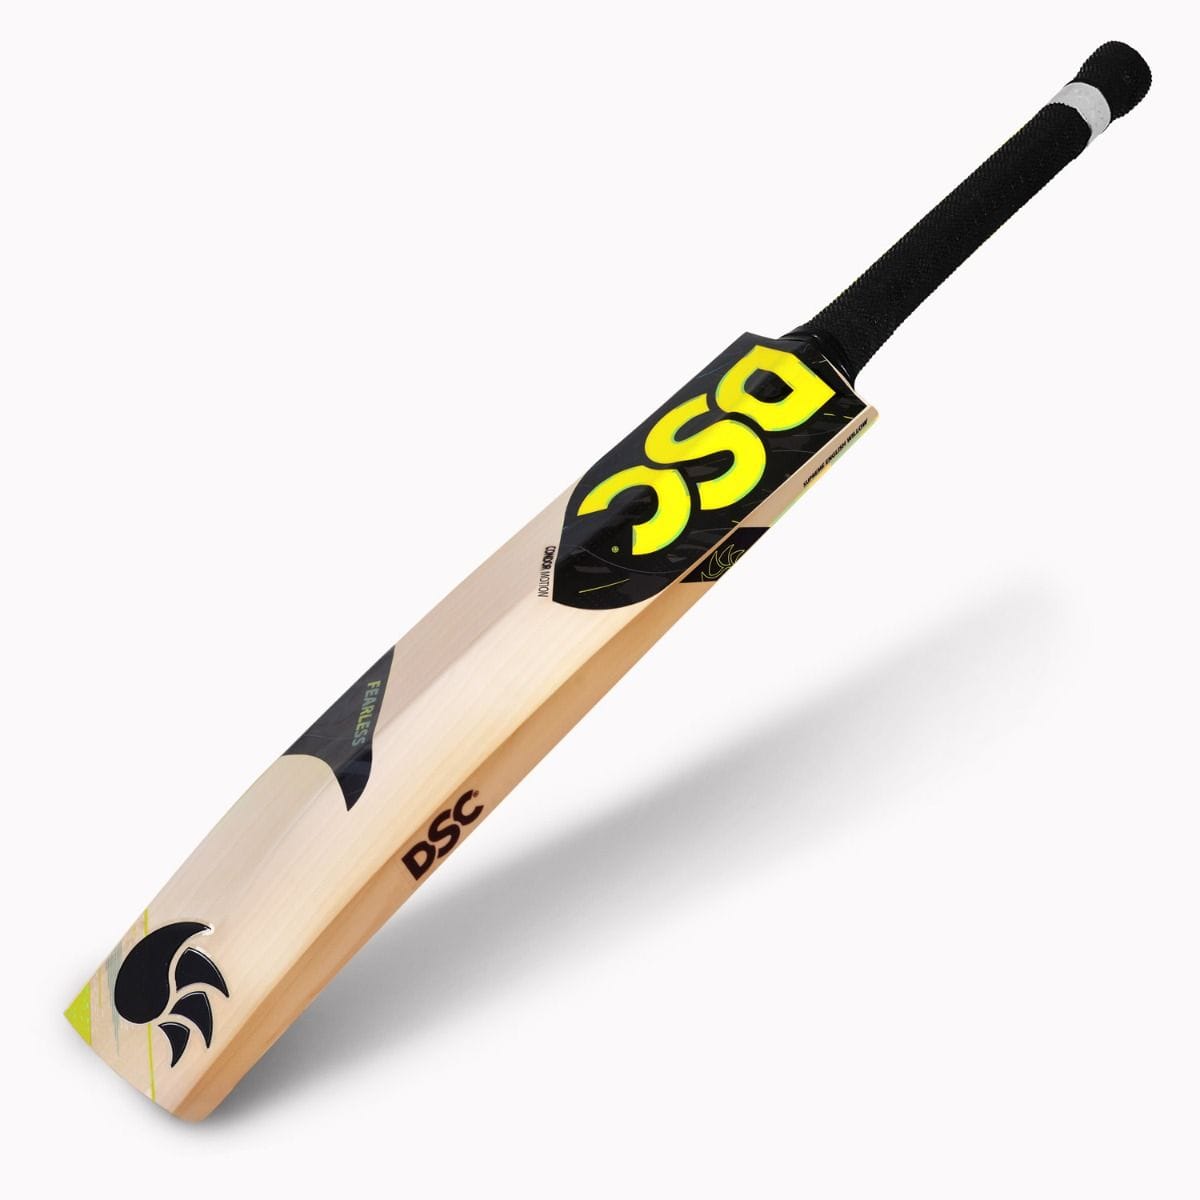 WSC Cricket Bats Harrow DSC Condor Motion Junior Cricket Bat